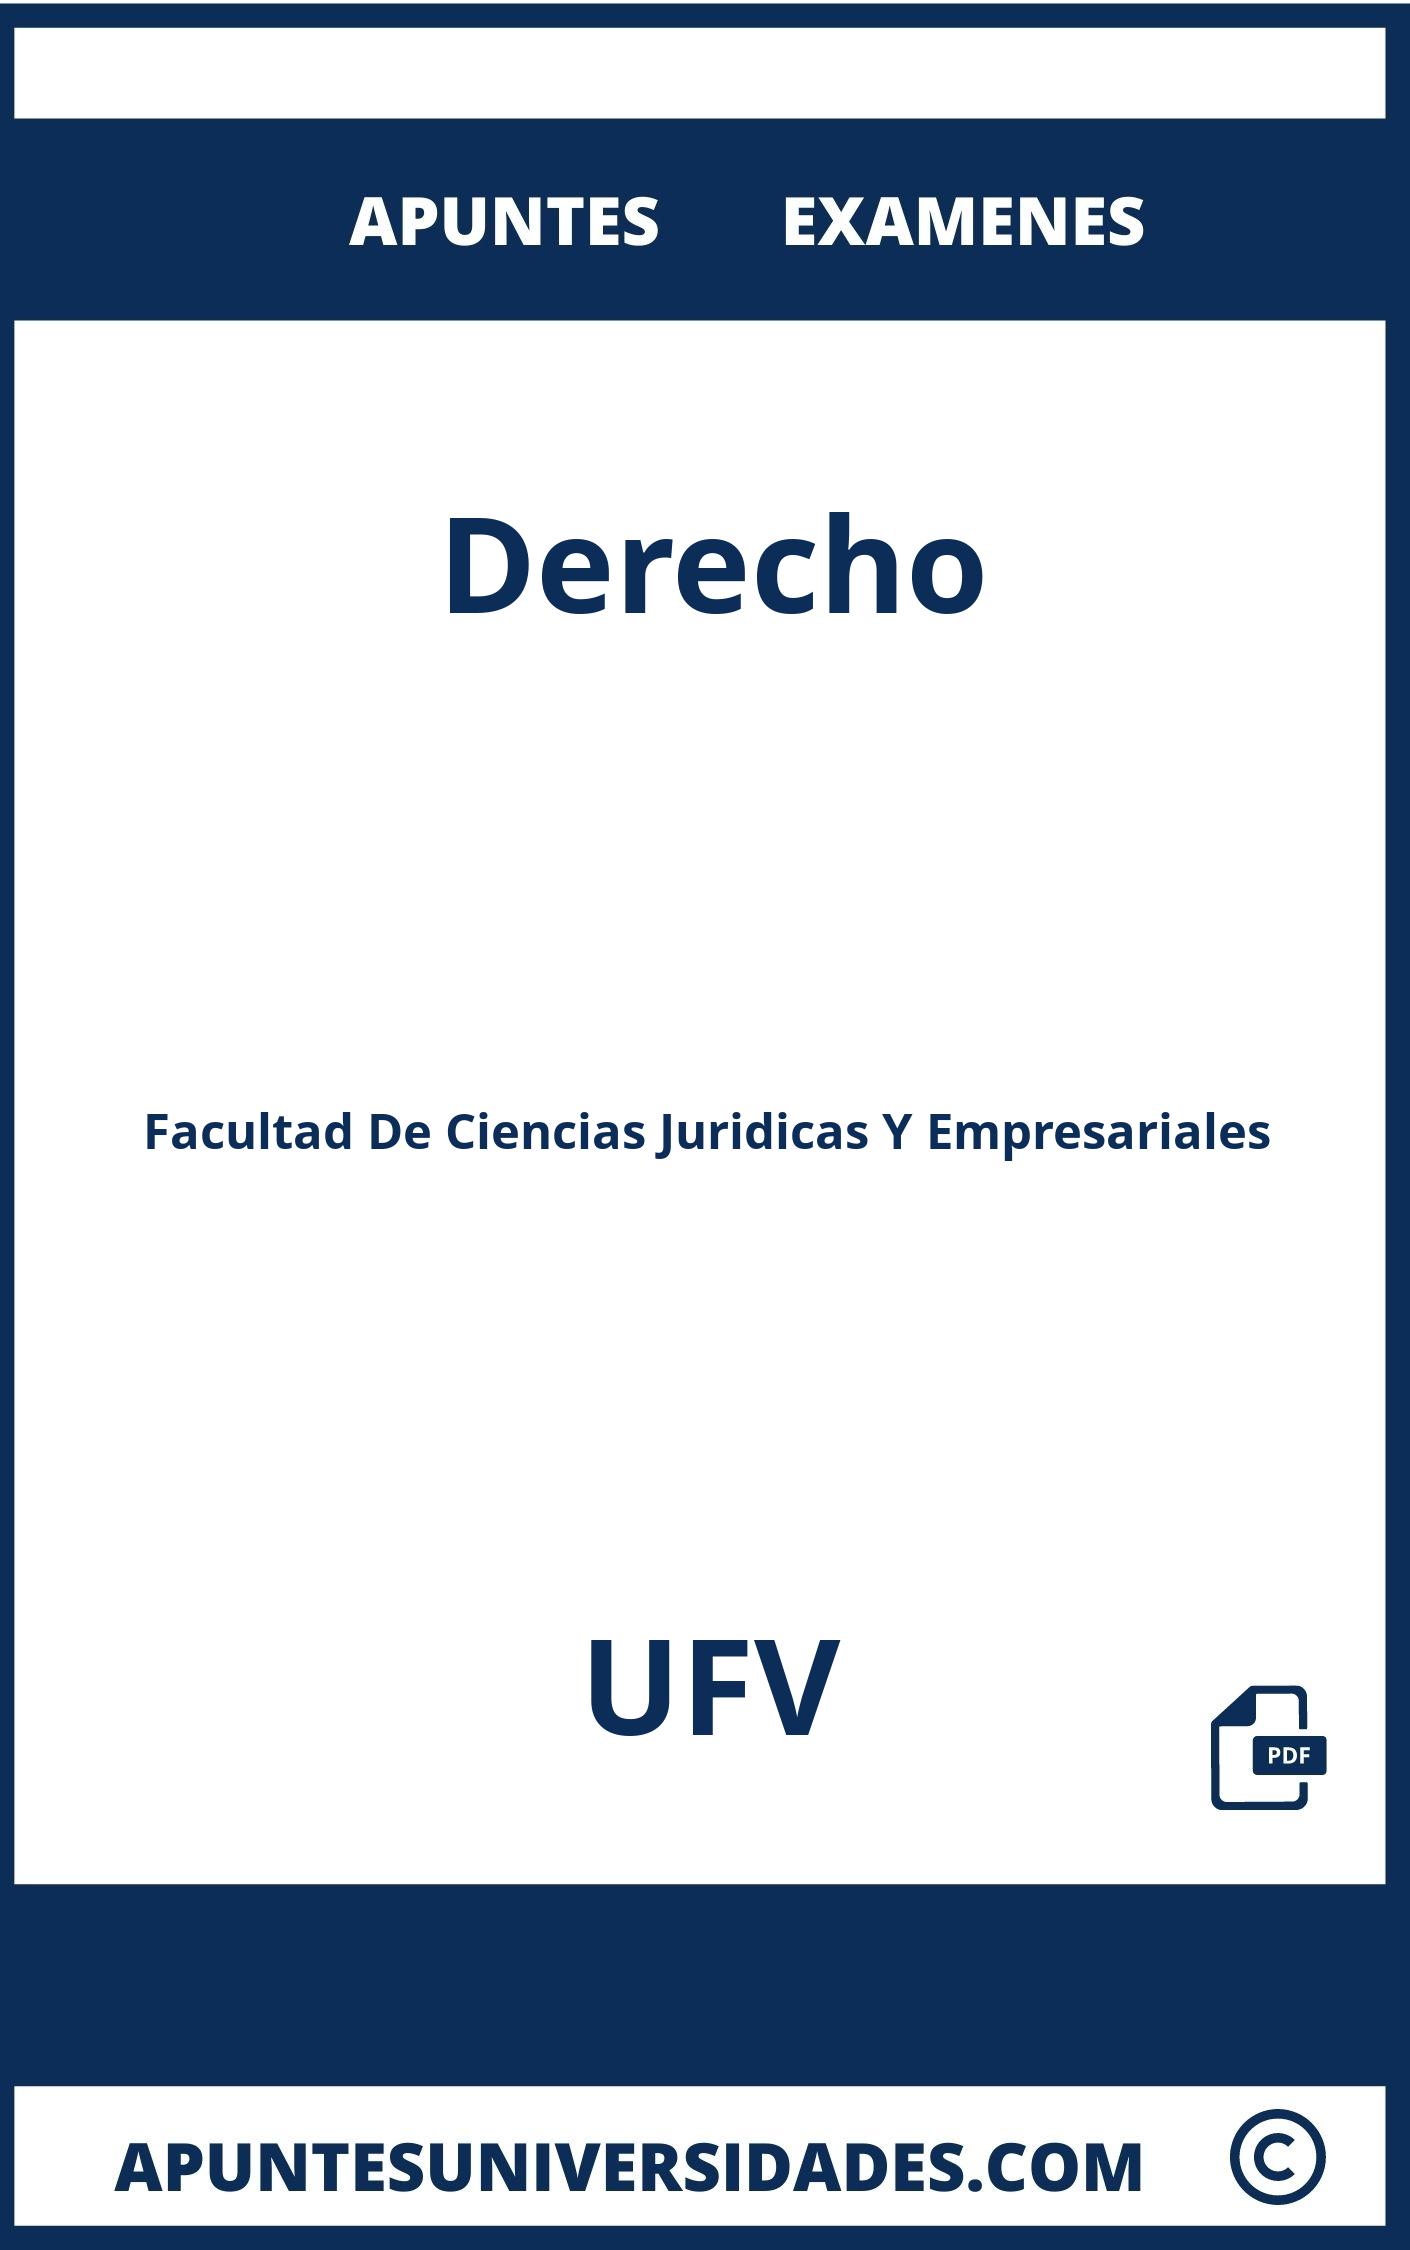 Derecho UFV Examenes Apuntes